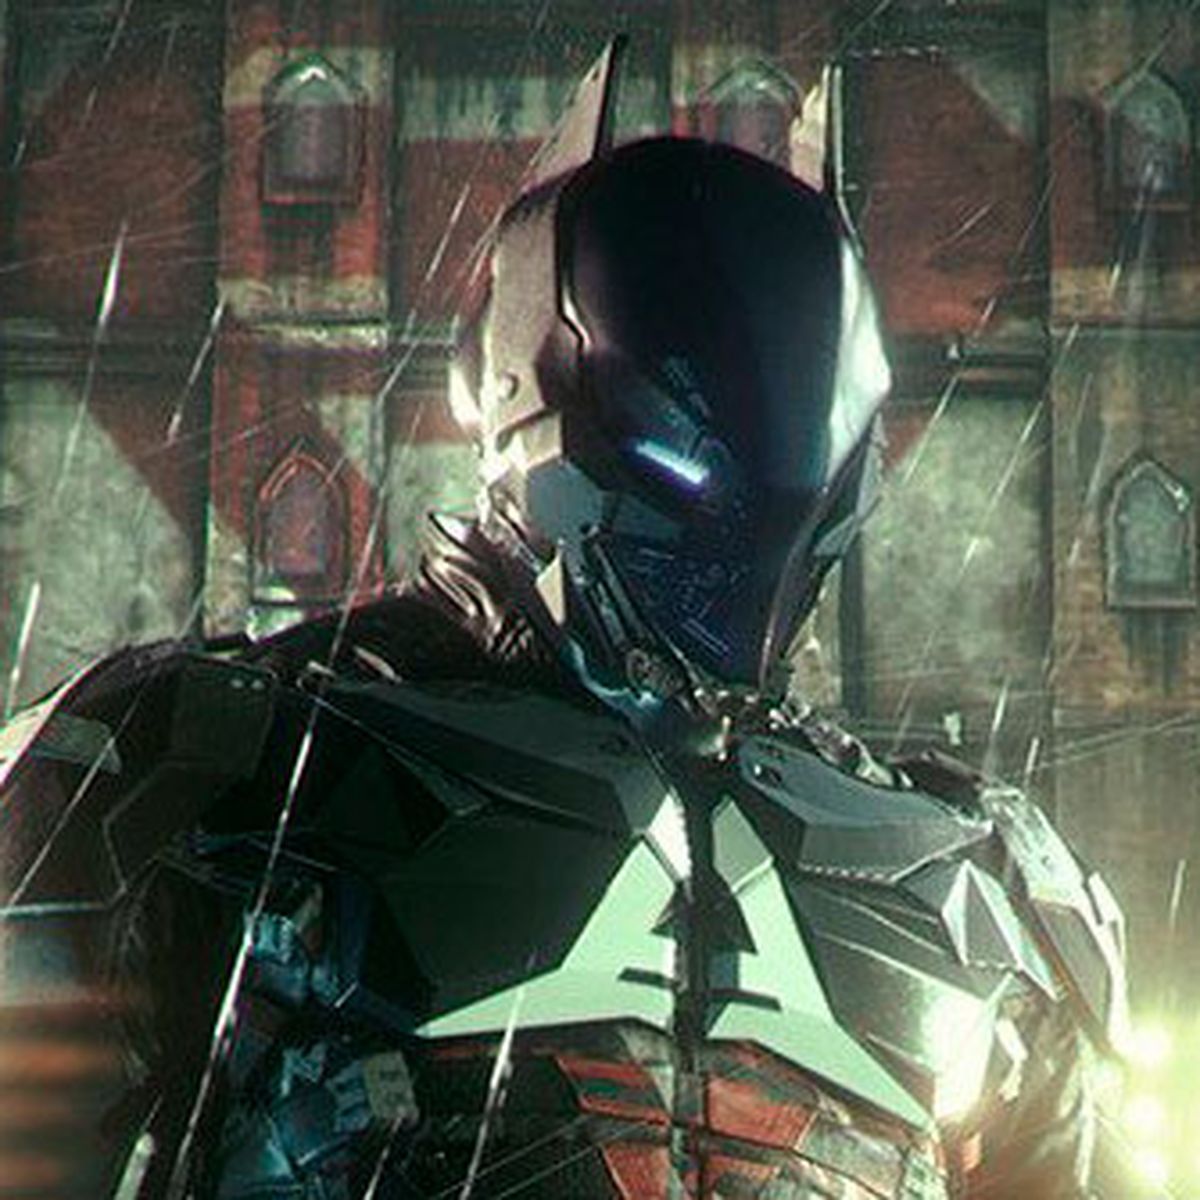 Requisitos mínimos, recomendados e 'Ultra' de Batman: Arkham Knight